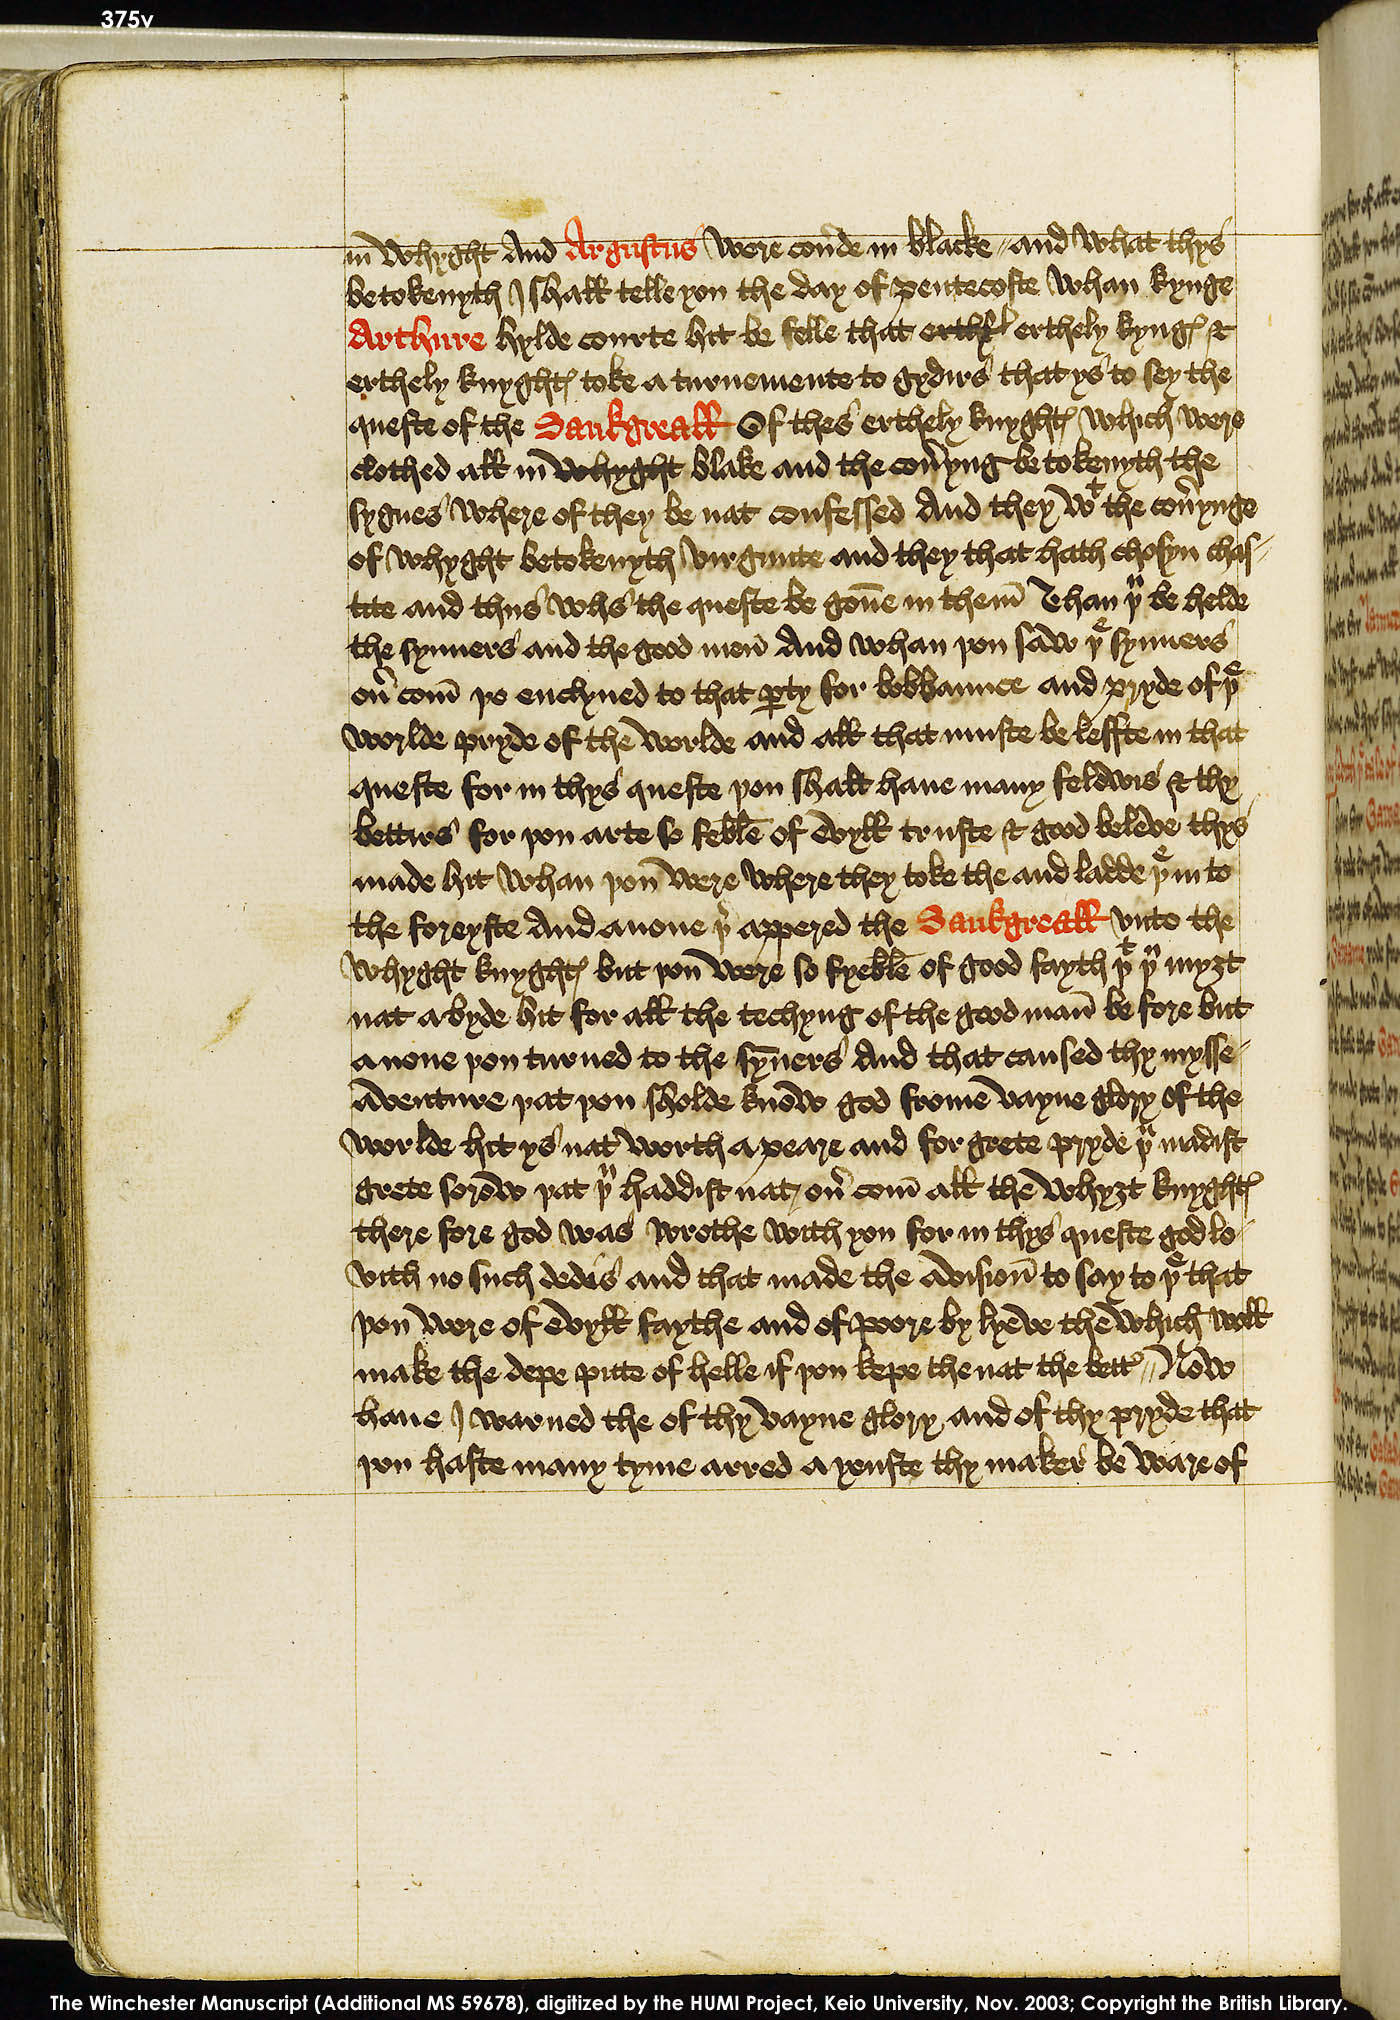 Folio 375v